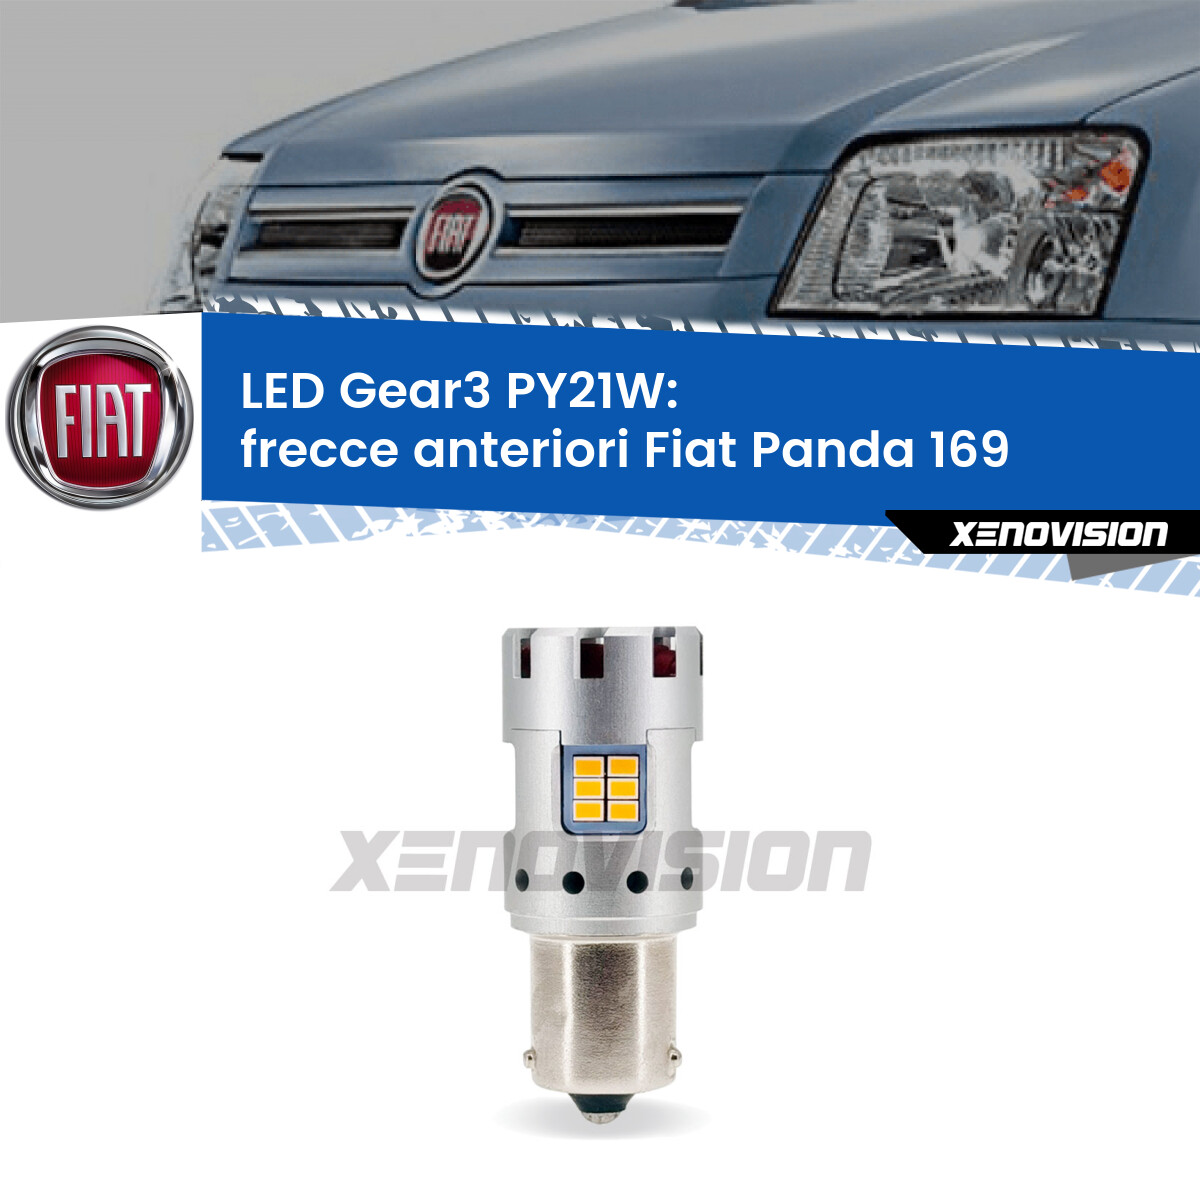 Frecce Anteriori LED Fiat Panda 169 2003 - 2012: PY21W Gear3